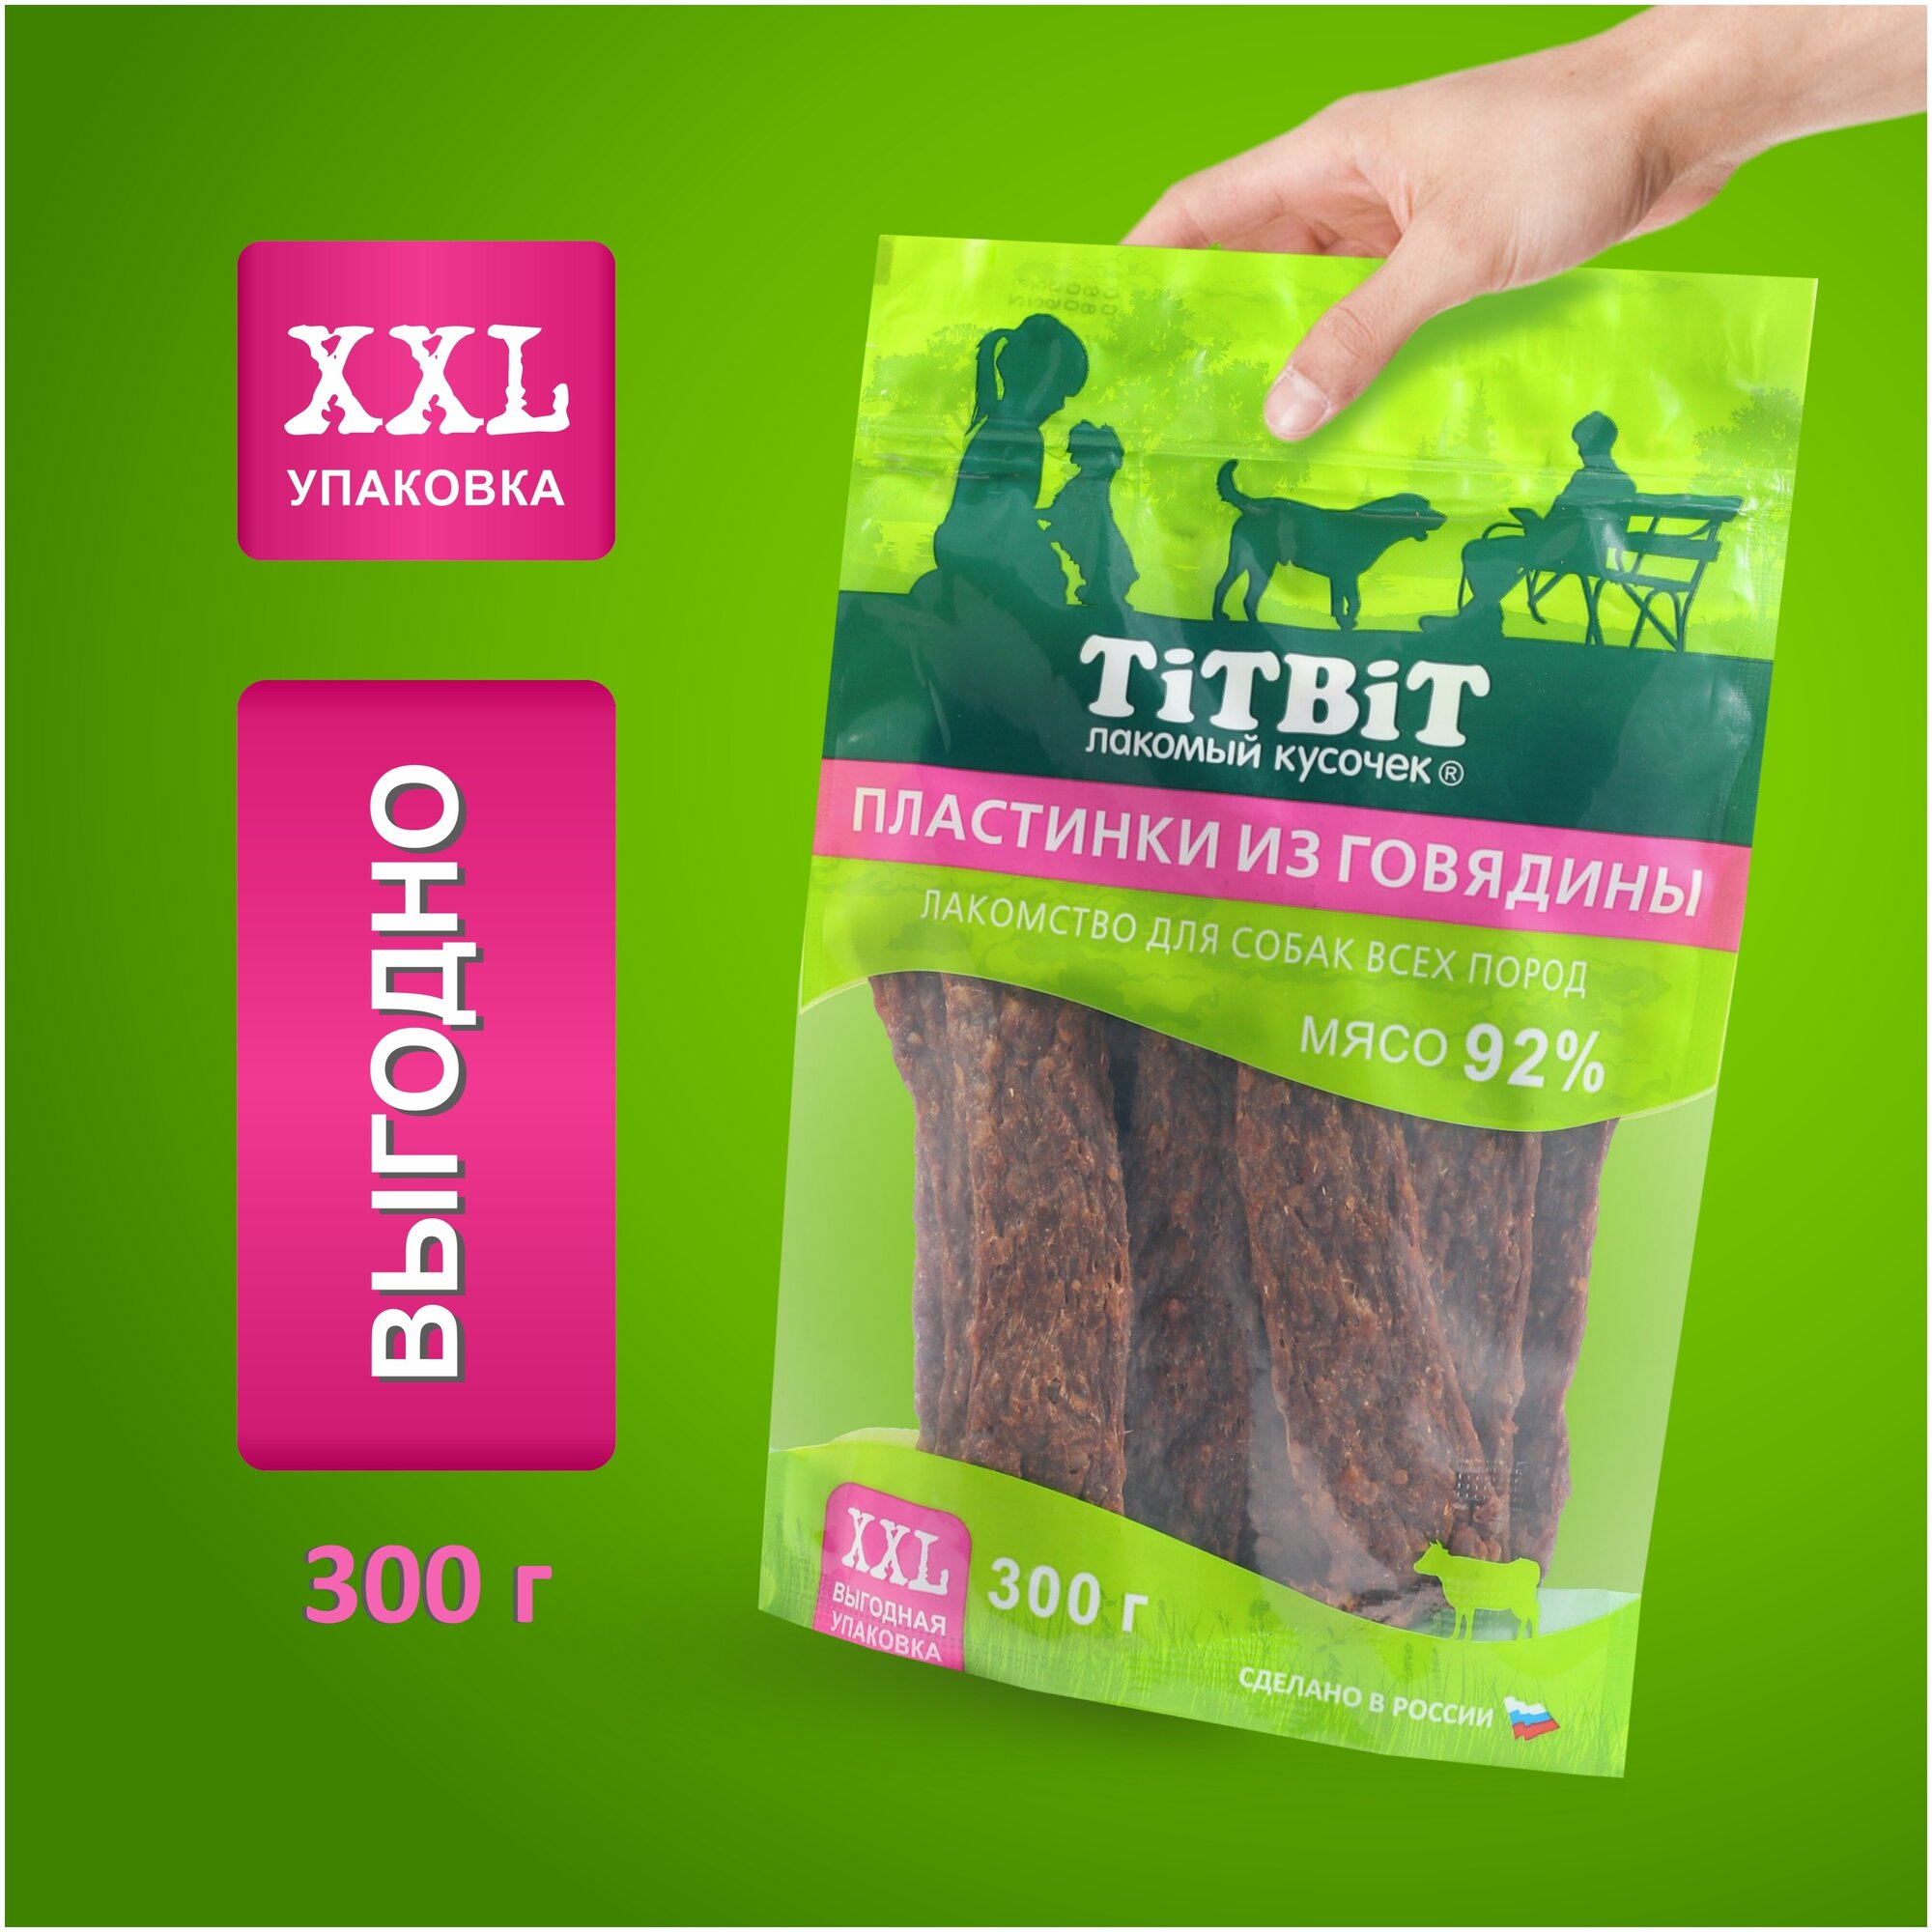 Лакомство для собак всех пород TiTBiT Пластинки из говядины - XXL 300 г